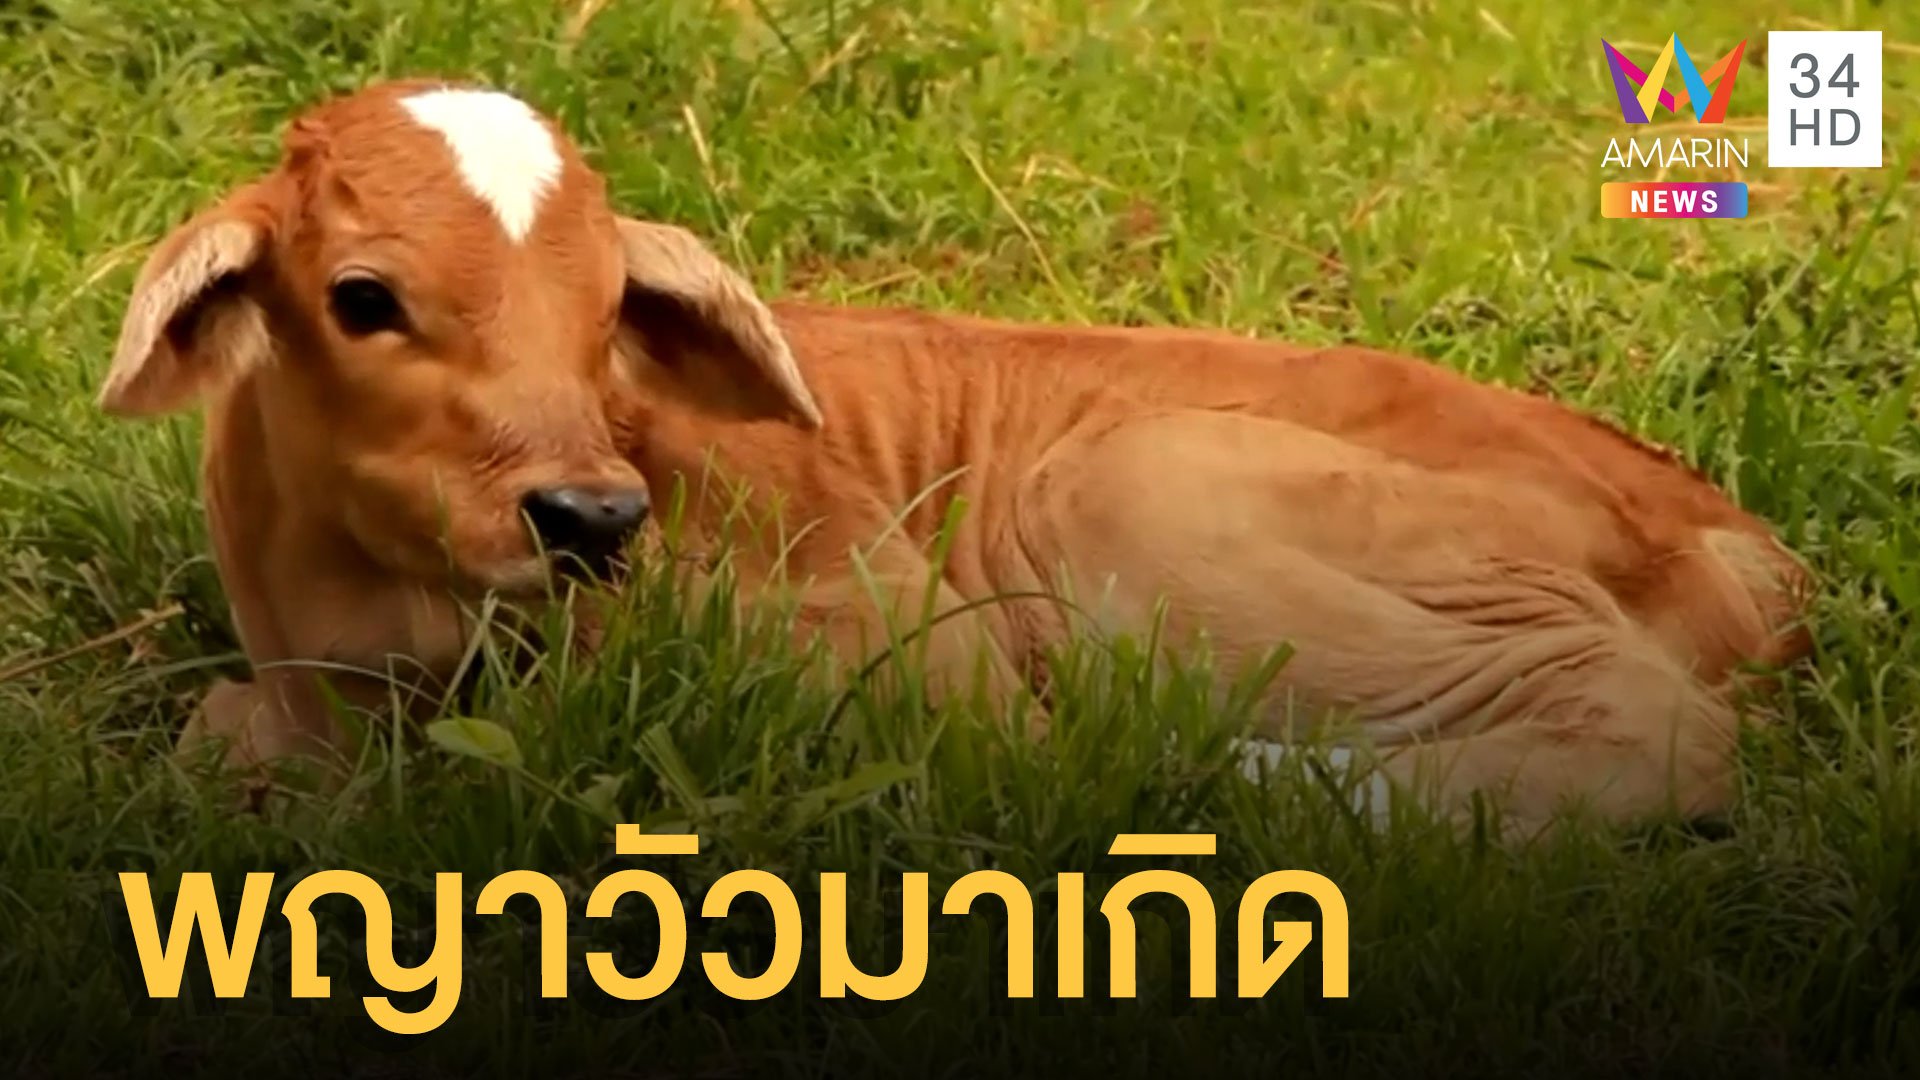 แม่วัวท้องที่ 7 ออกลูกเป็น 'พญาวัว' | ข่าวอรุณอมรินทร์ | 26 มิ.ย. 65 | AMARIN TVHD34